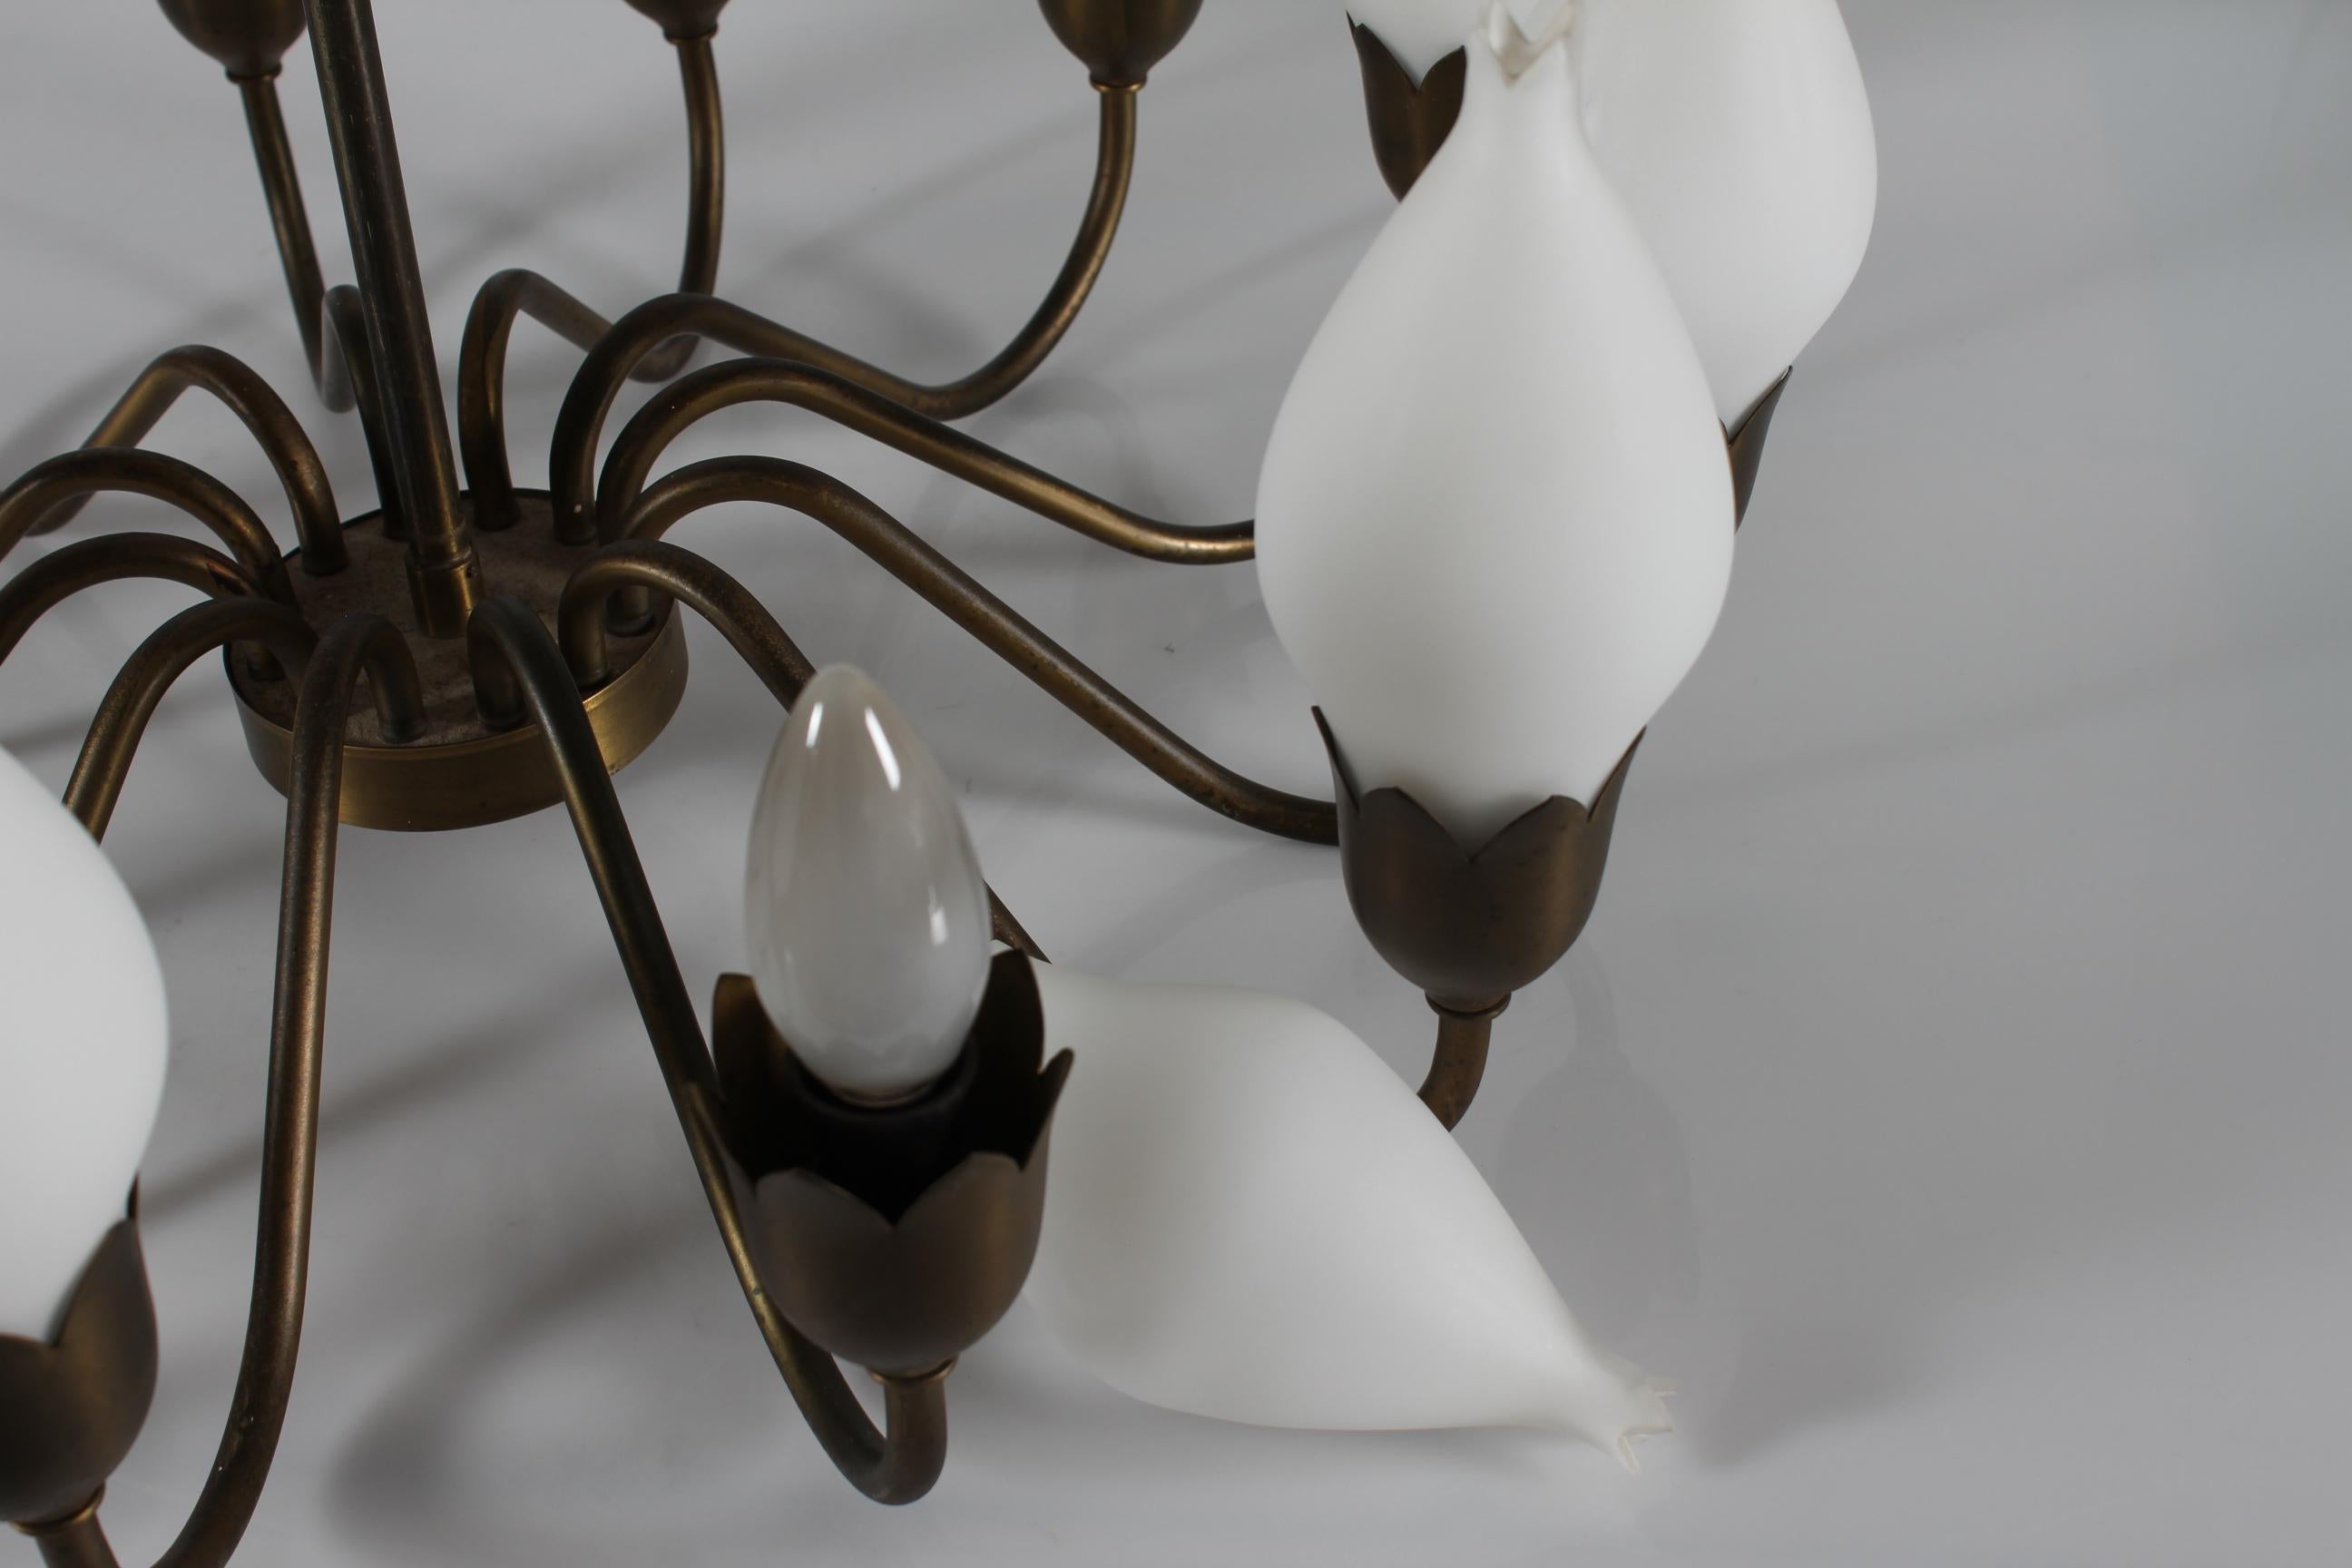  Fog & Mørup Tulip Brass Chandelier 12-armed of Hand-blown Glass Denmark 1950s For Sale 2